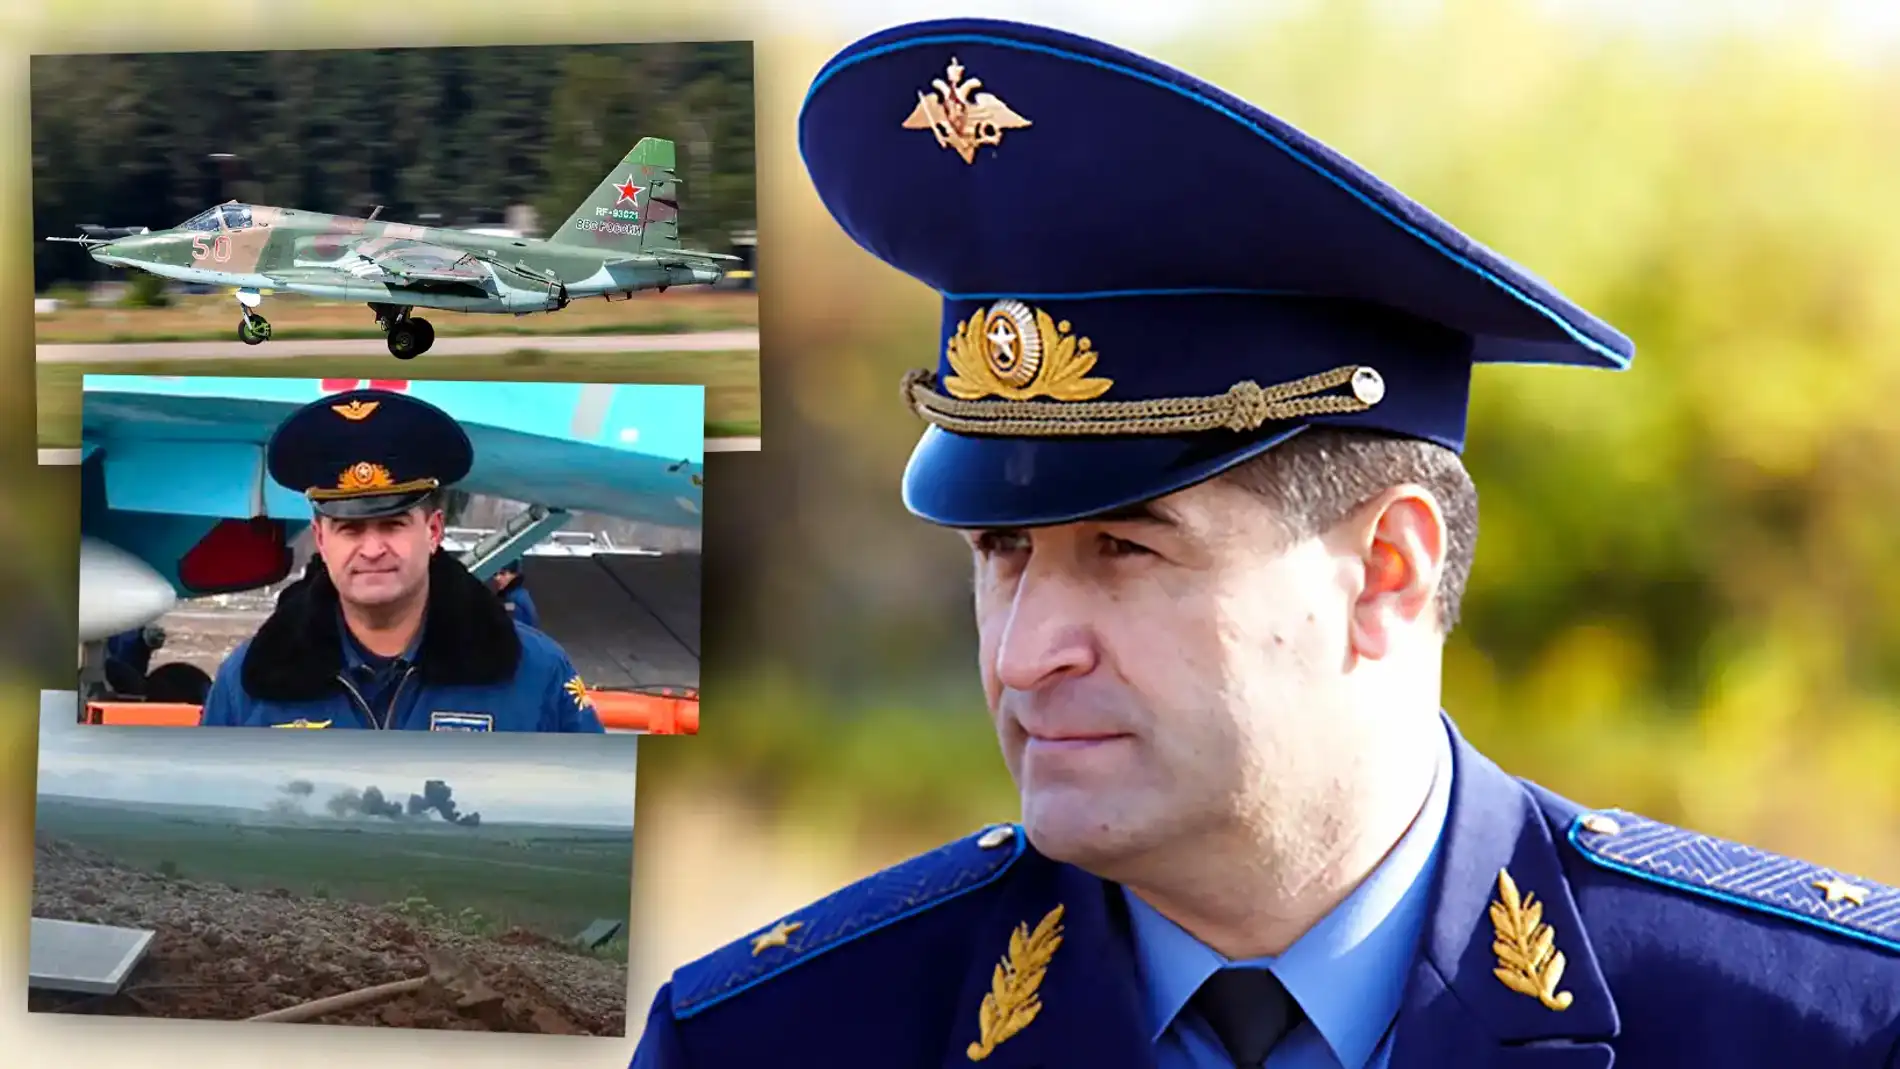 El general de división ruso fallecido Botashev